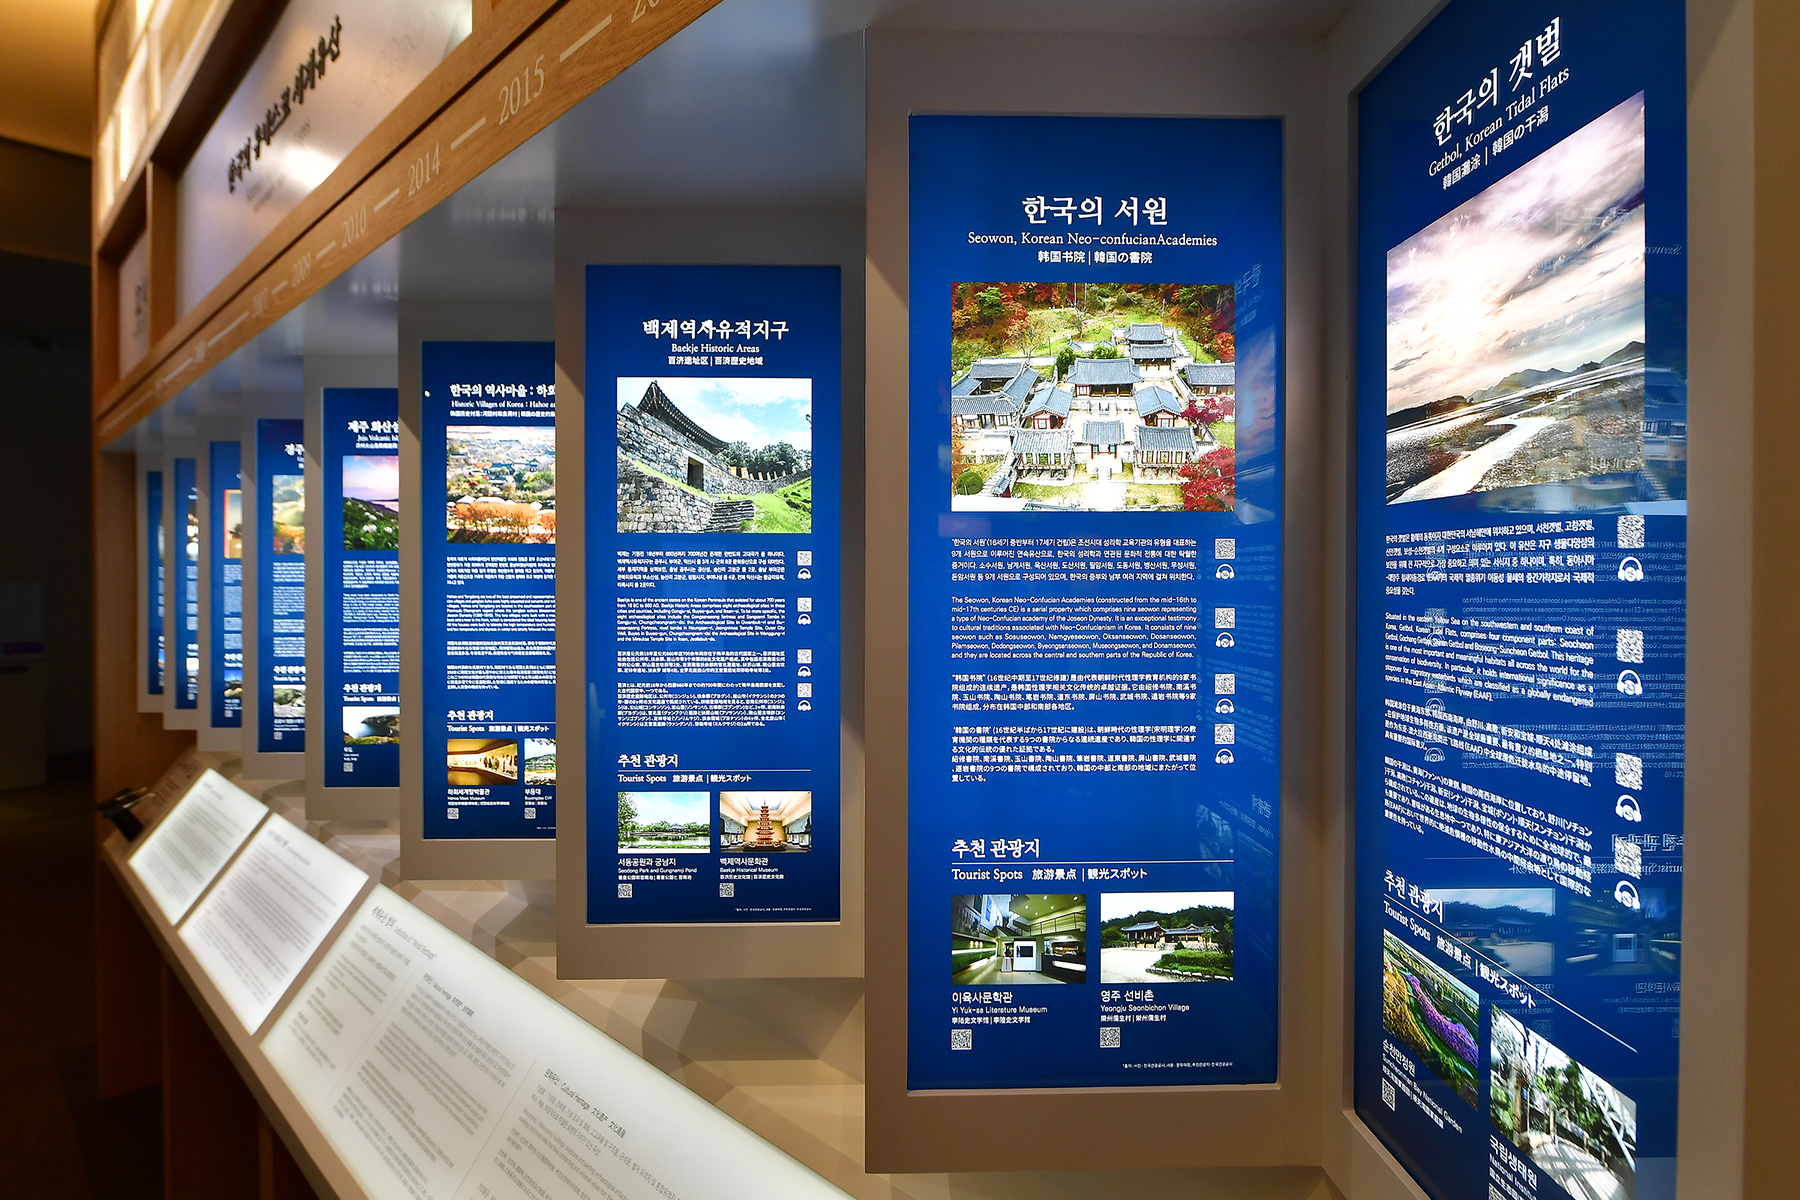 青瓦台サランチェ 1階韓国観光展示館 11